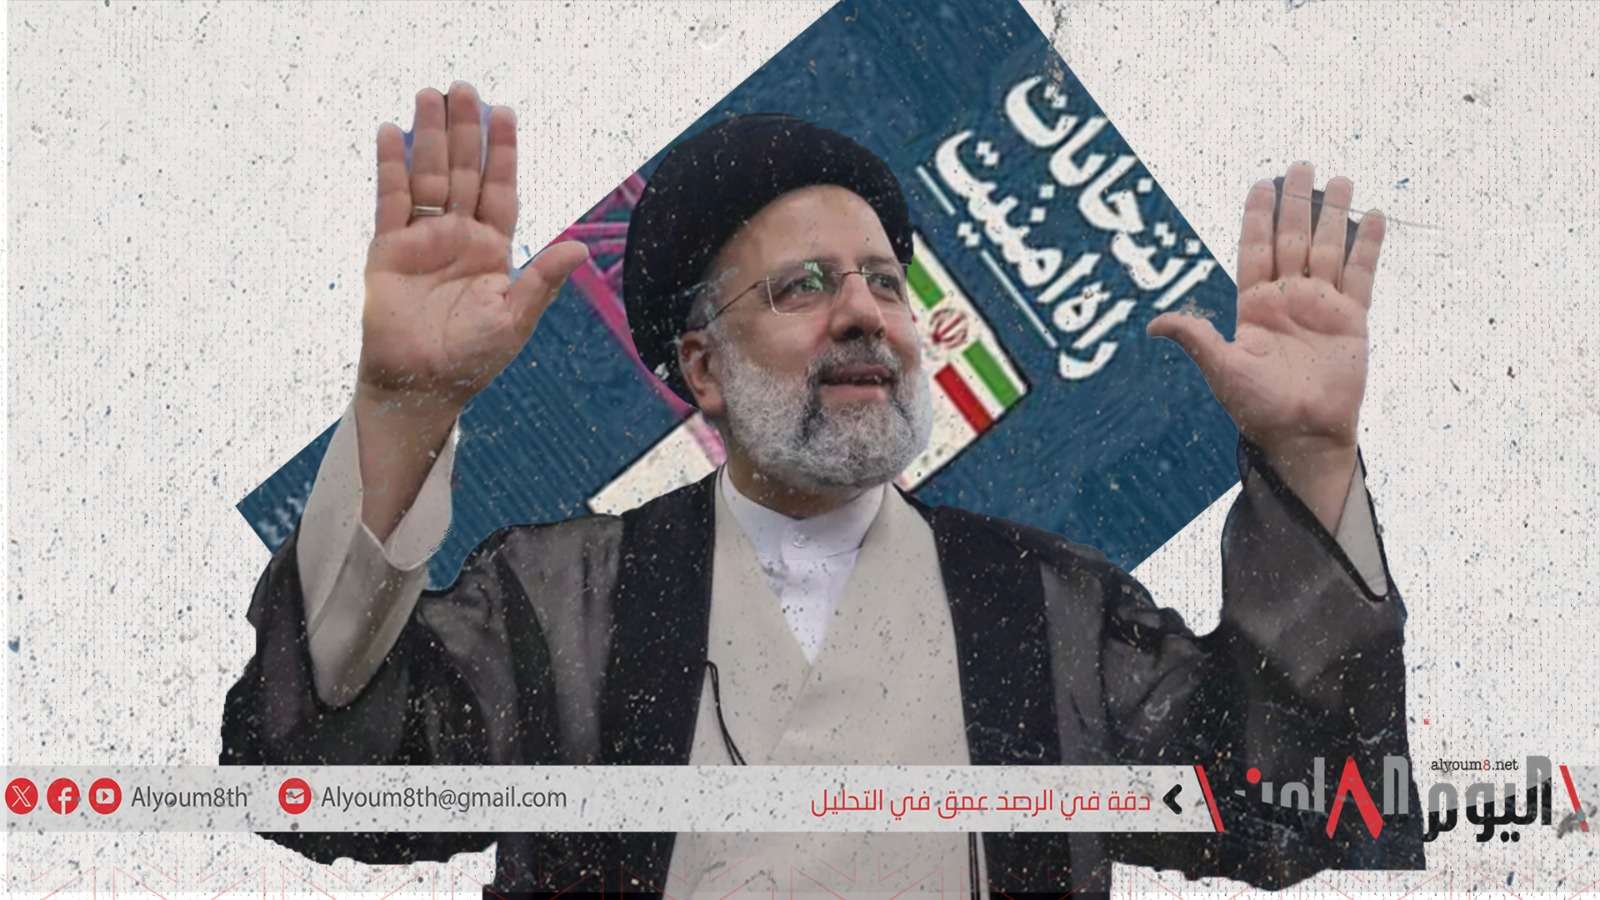 الانتخابات الإيرانية.. "استفتاء وتصويت على الإطاحة بالديكتاتورية الدينية"